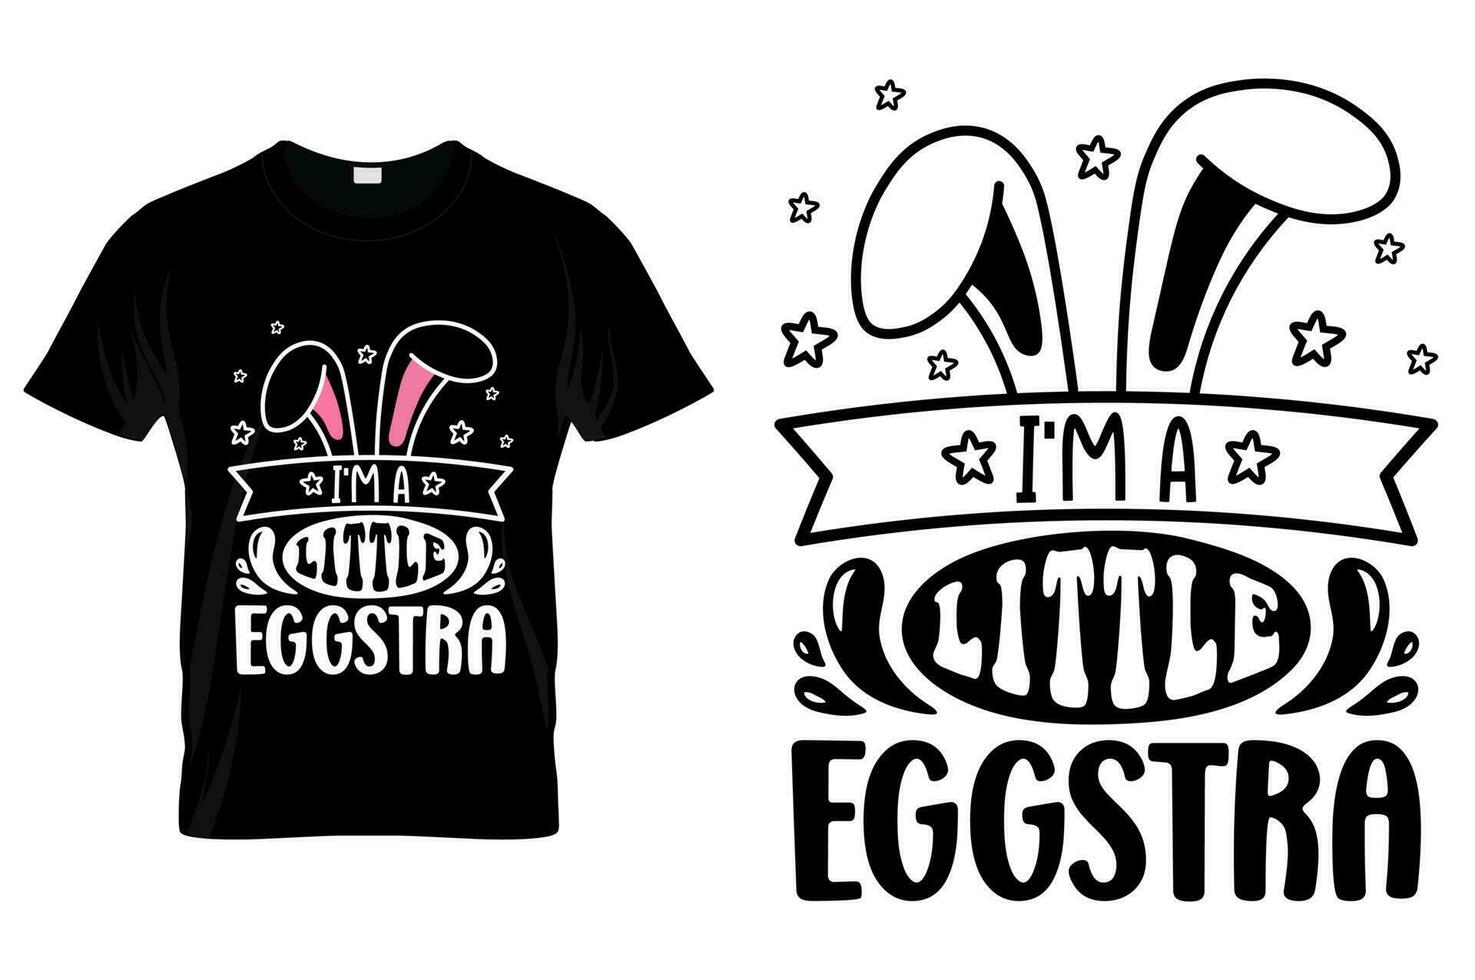 Pasqua giorno maglietta design Pasqua divertente citazioni maglietta per bambini uomini donne manifesto e regalo vettore